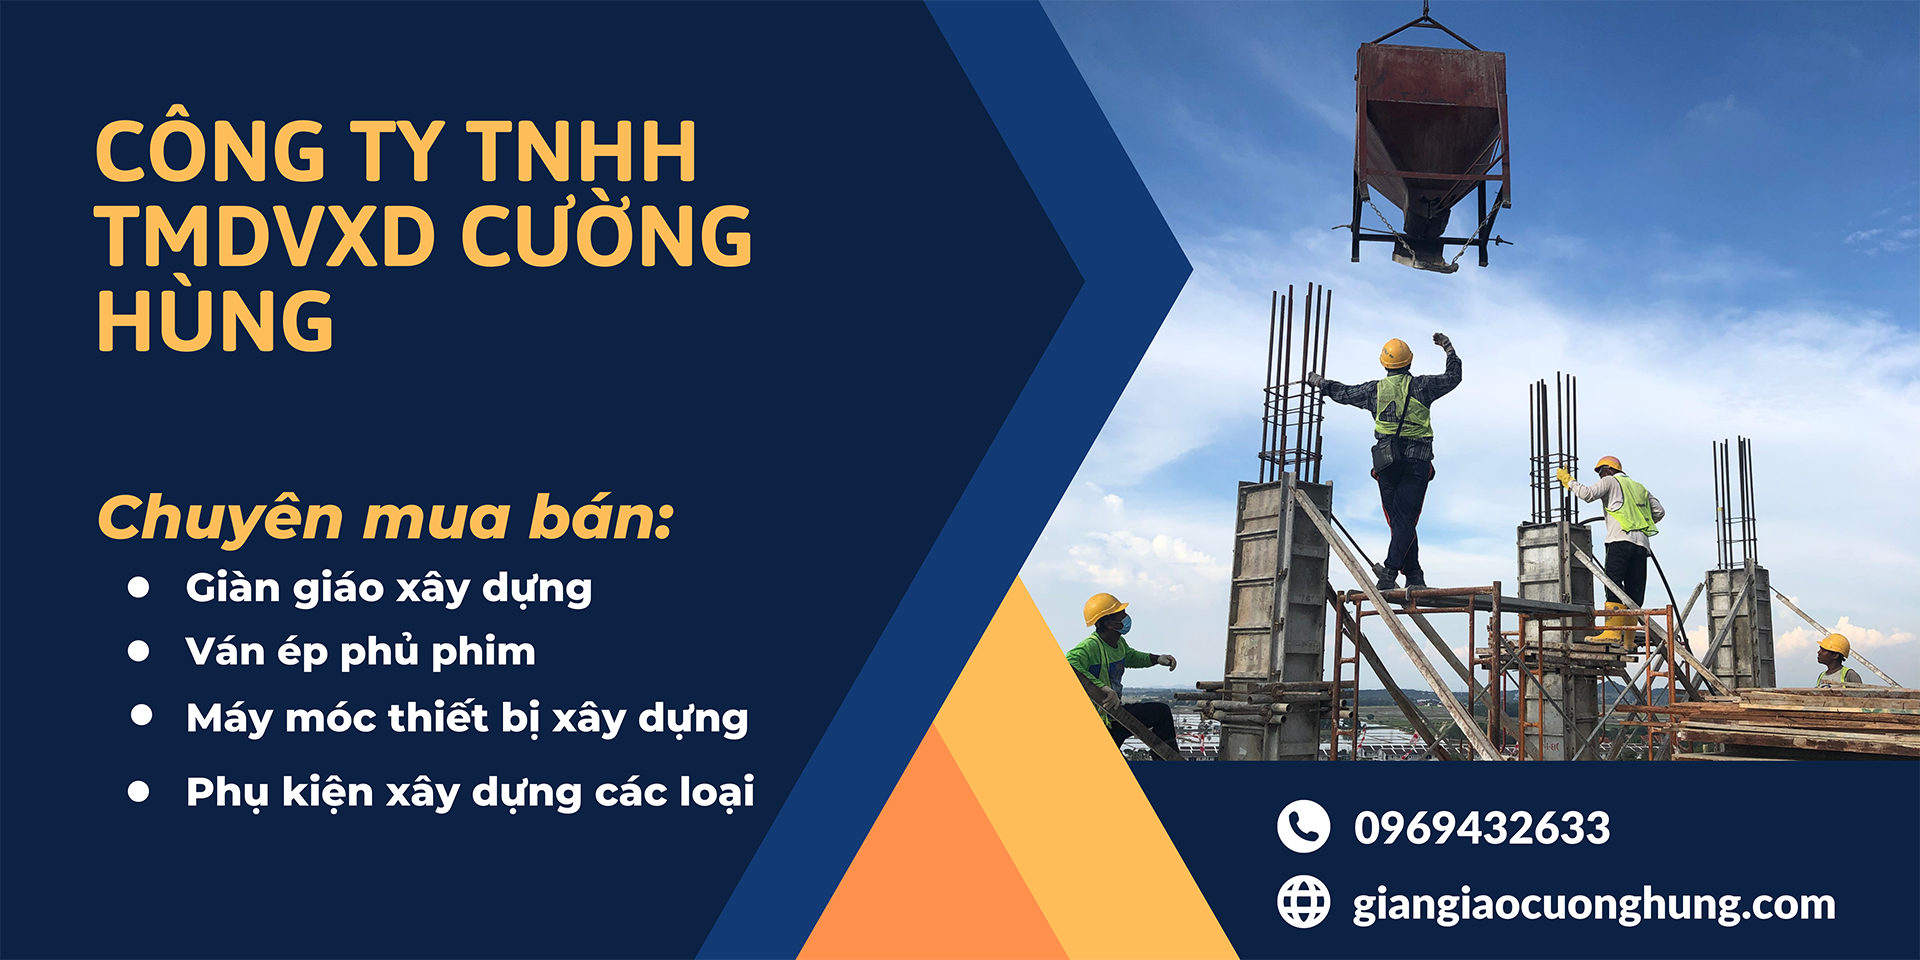 Niềm tin cho mọi nhà thầu xây dựng ở Quy Nhơn Bình Định